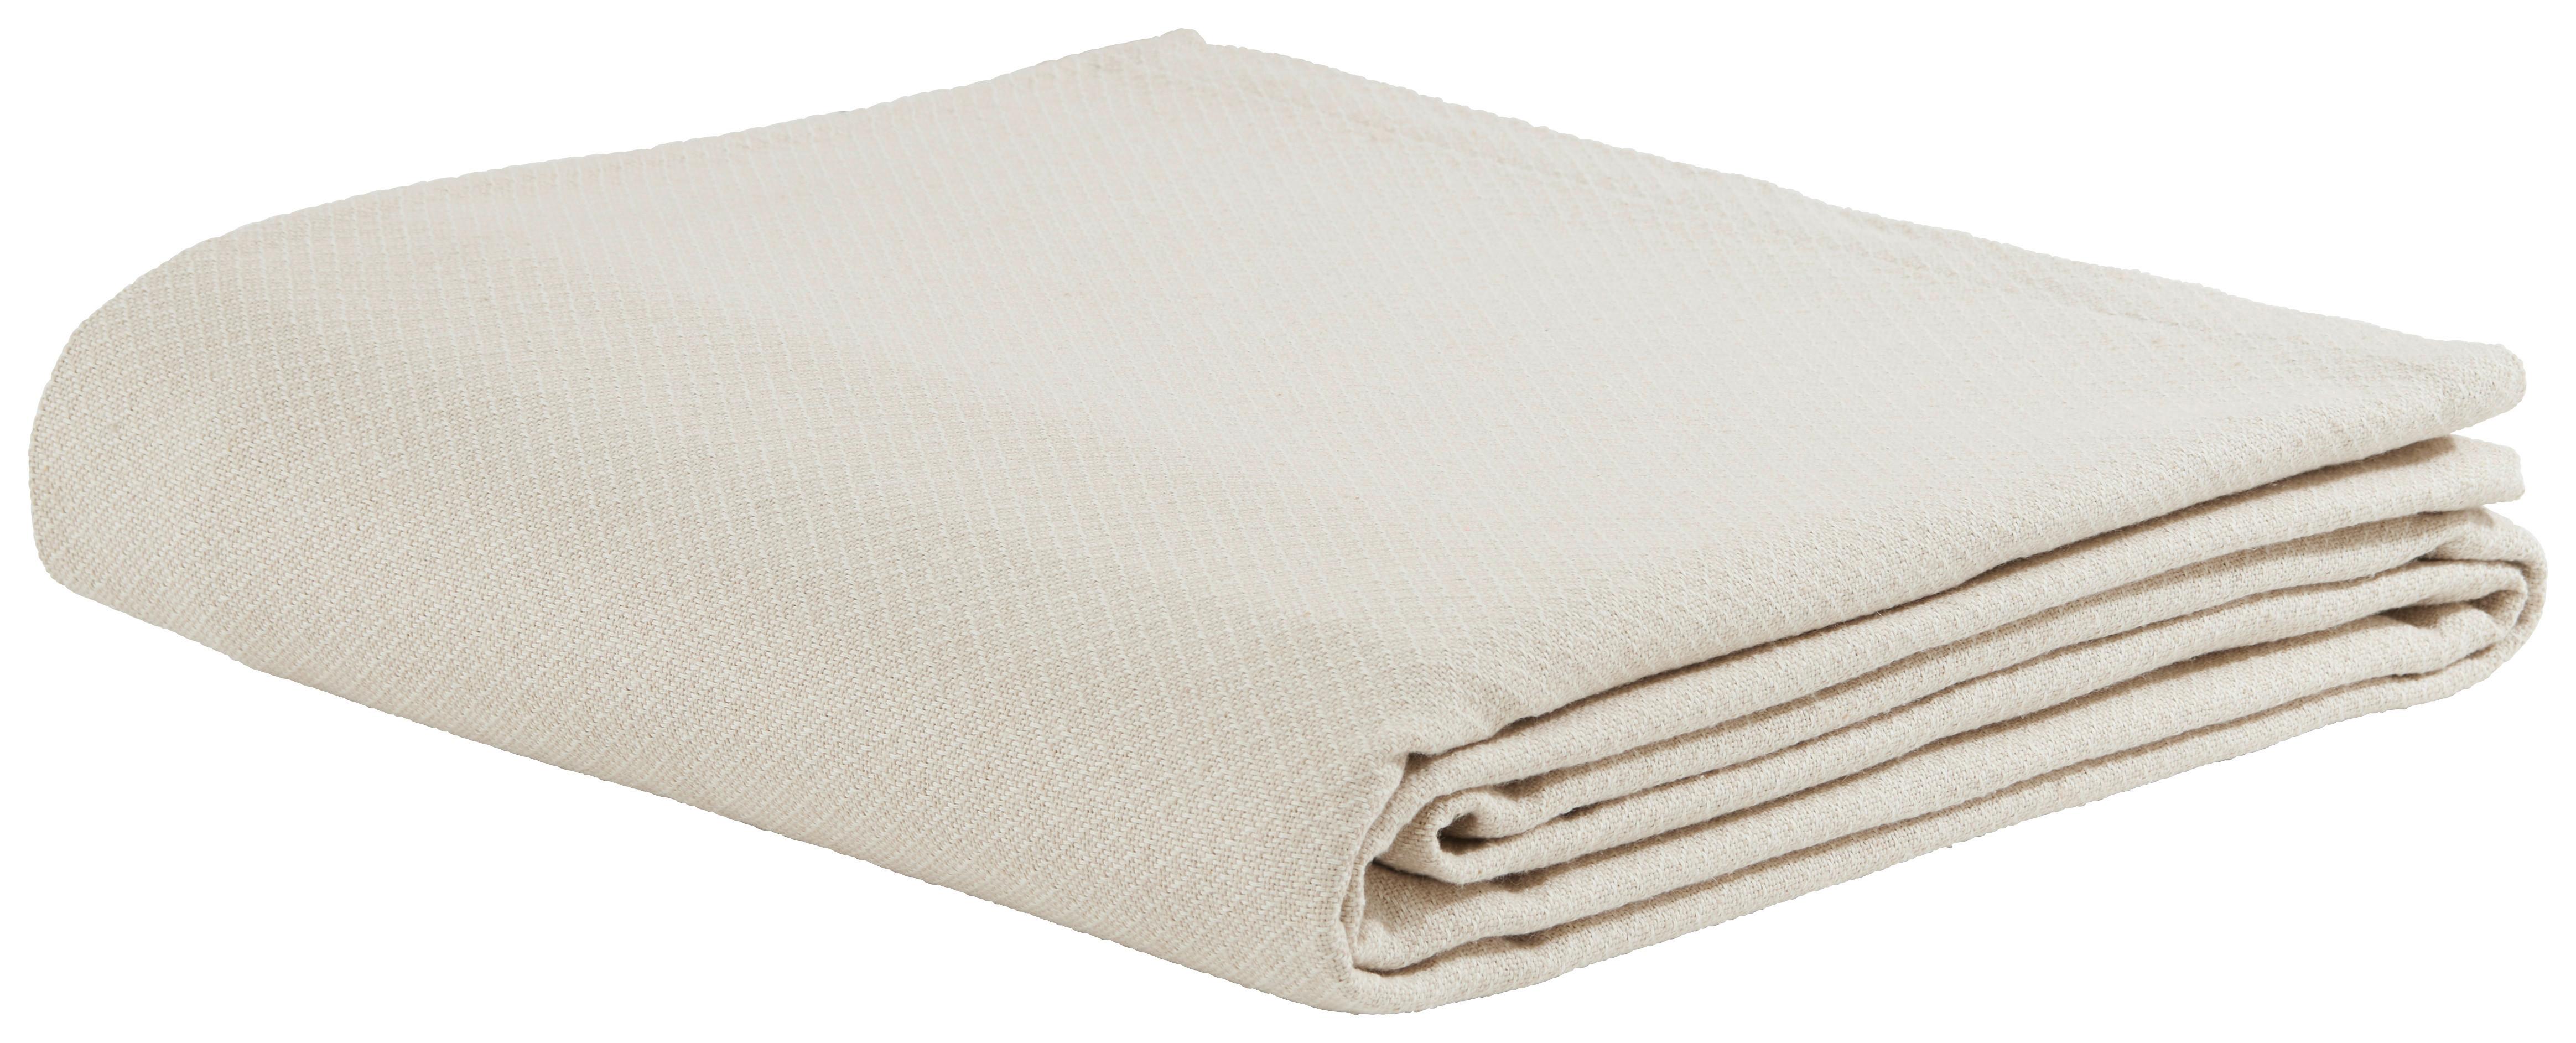 Ágytakaró Dobby Uni - Taupe/Fehér, Natur, Textil (140/210cm) - Premium Living